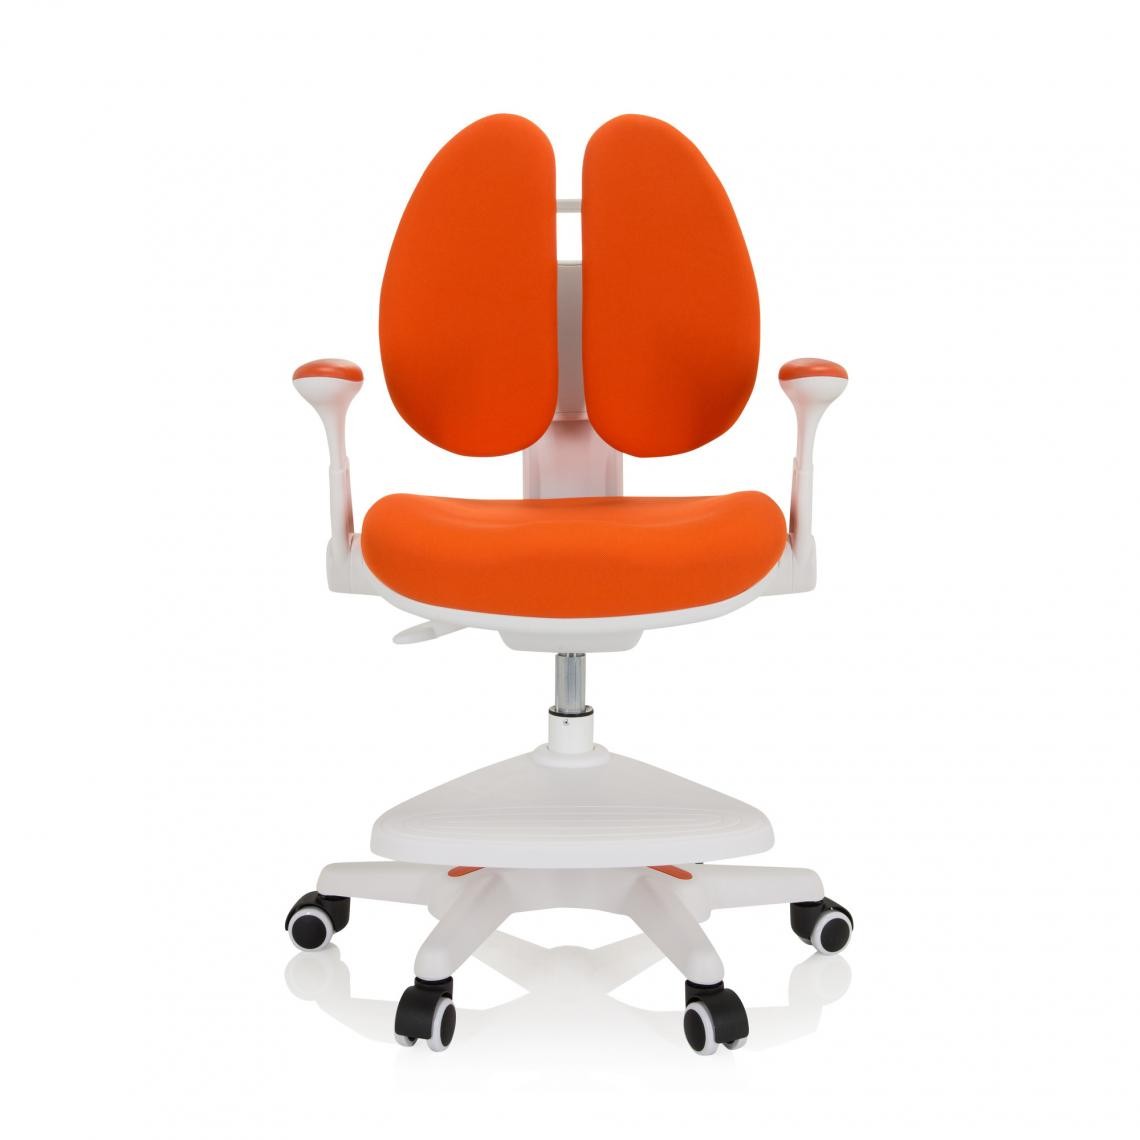 Hjh Office - Chaise de bureau pour enfant KID WING Tissu orange hjh OFFICE - Chaises